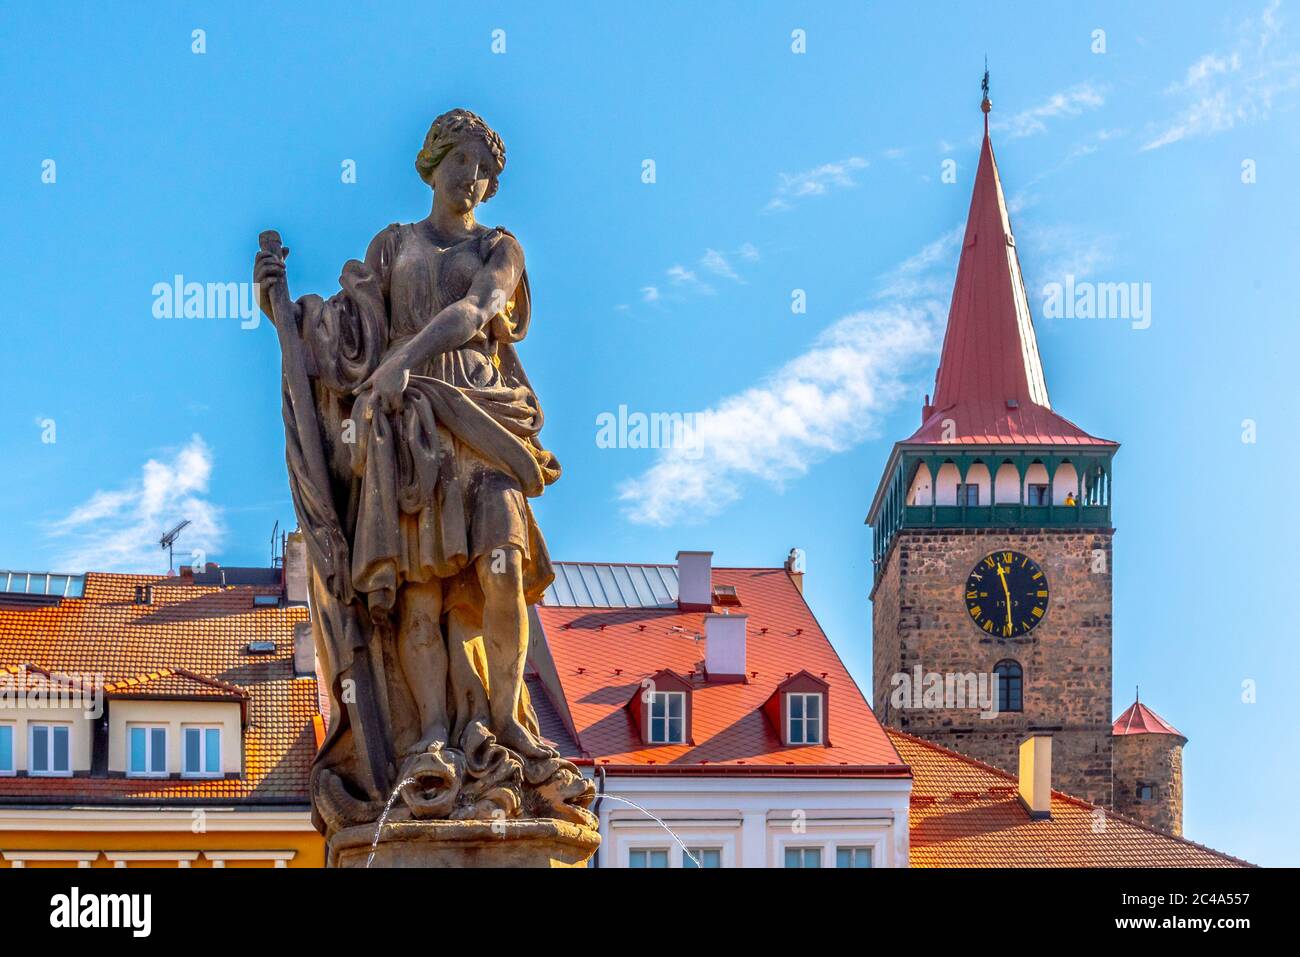 Fountain statue and Valdice Gate, or Valdicka brana, in Jicin, Czech Republic Stock Photo